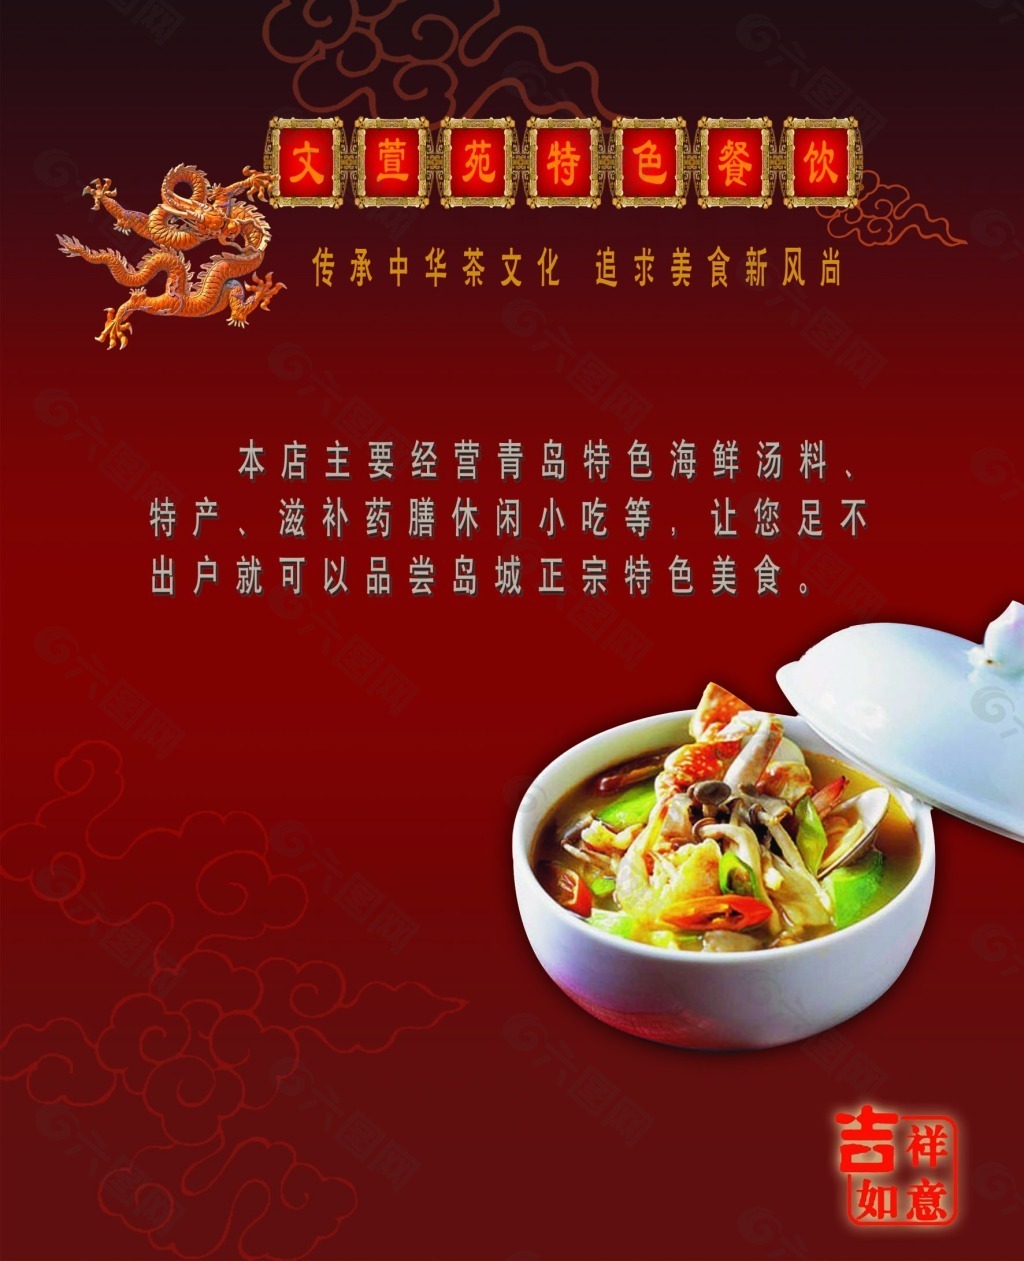 中国元素特色菜宣传海报